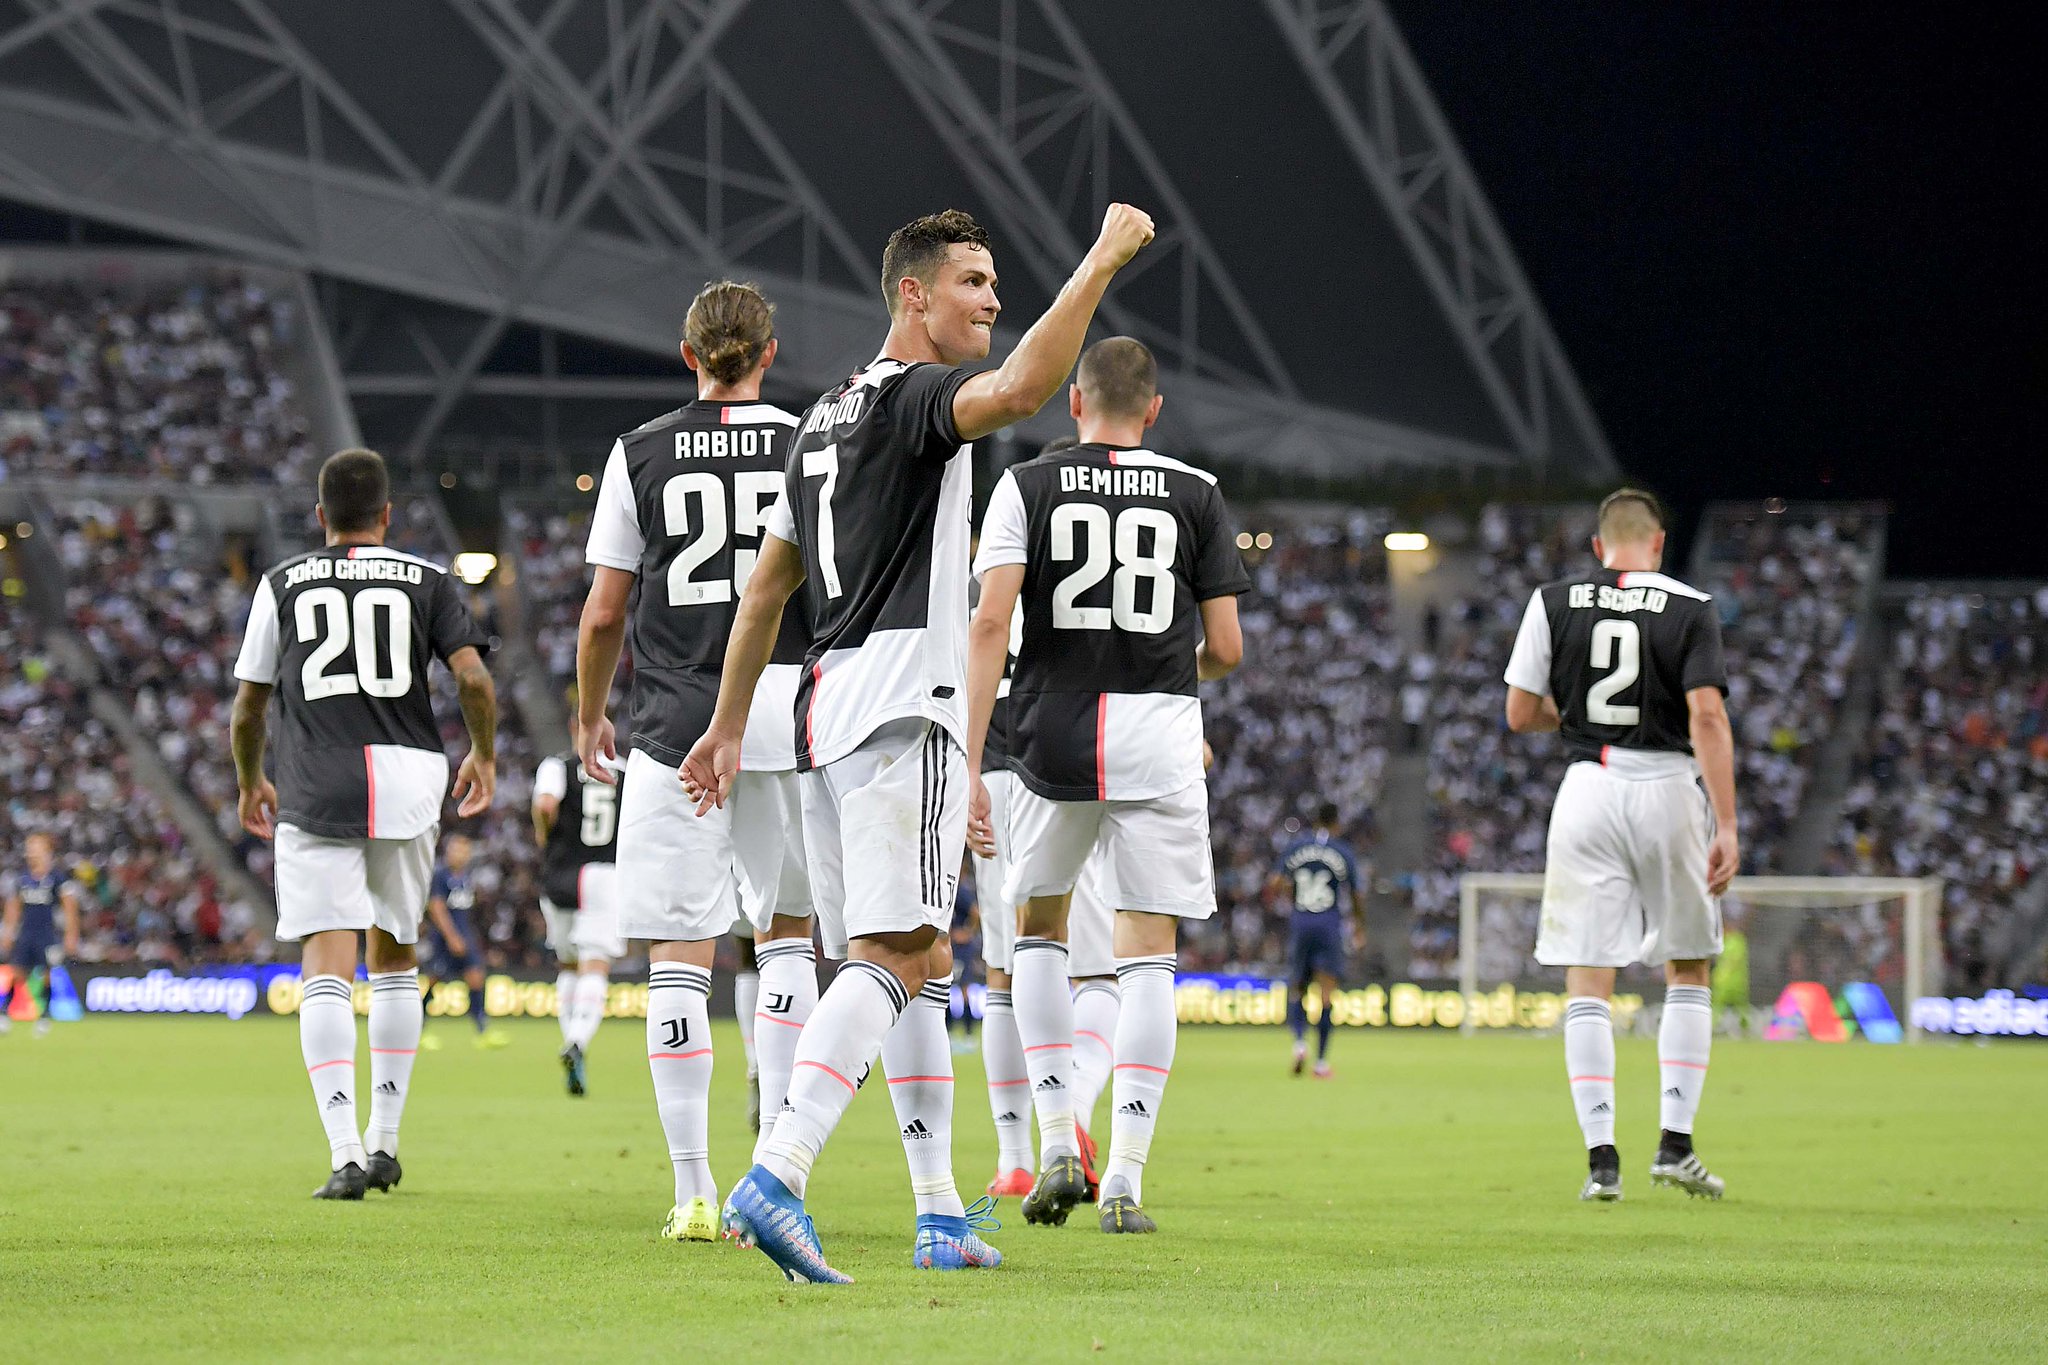 Serie A Contenders For Scudetto In 2019/20 Season